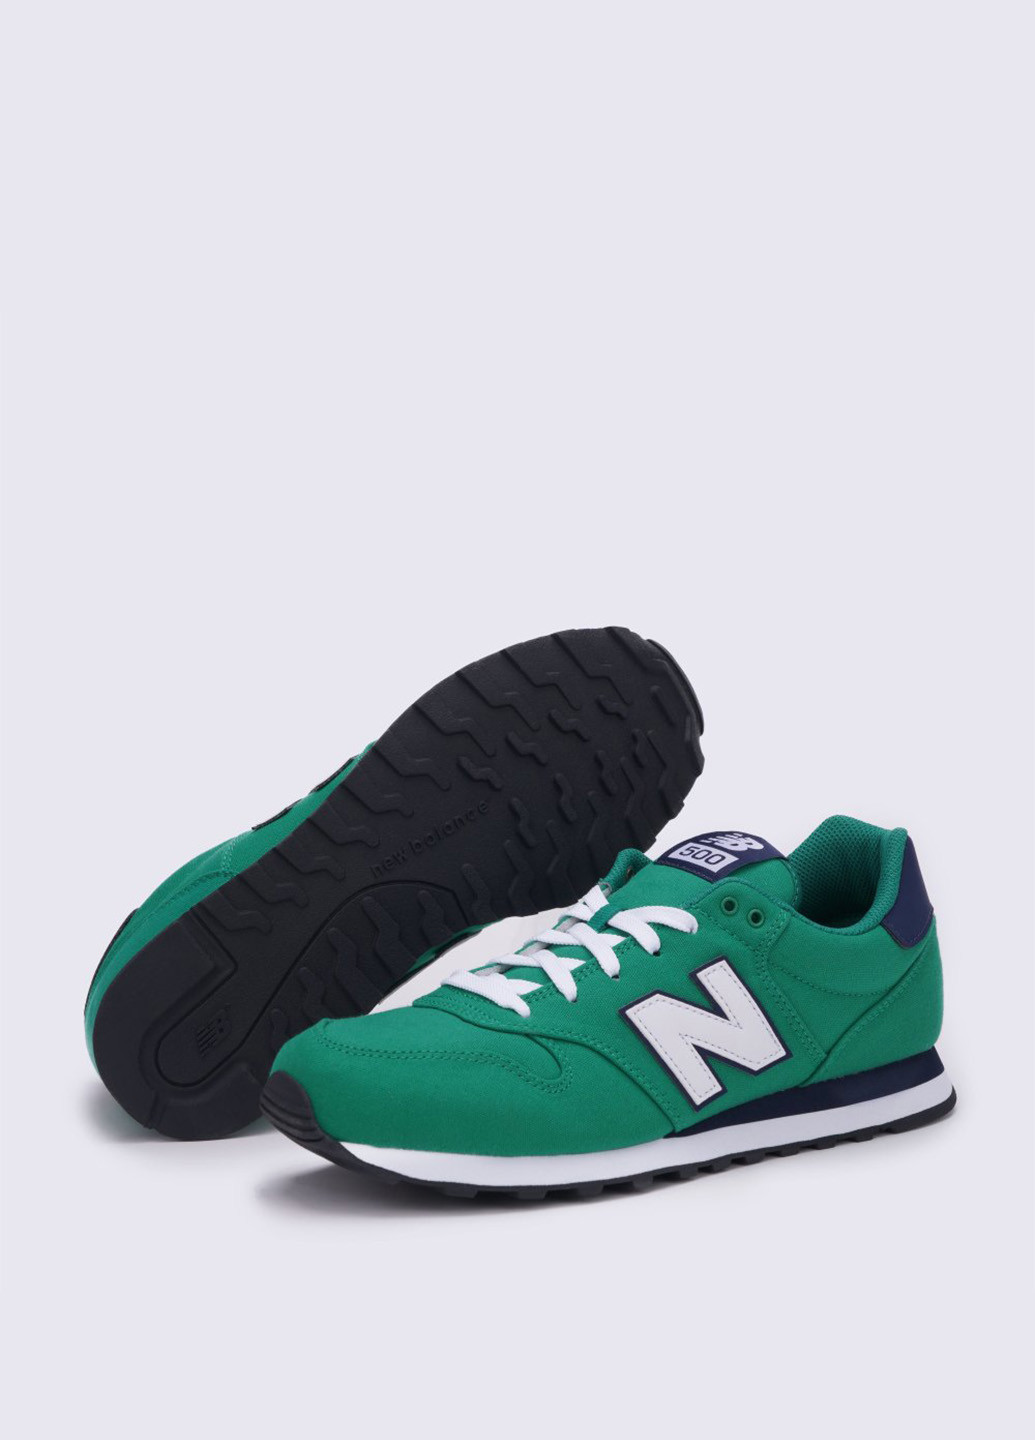 Зеленые всесезонные кроссовки New Balance 500 Сanvas